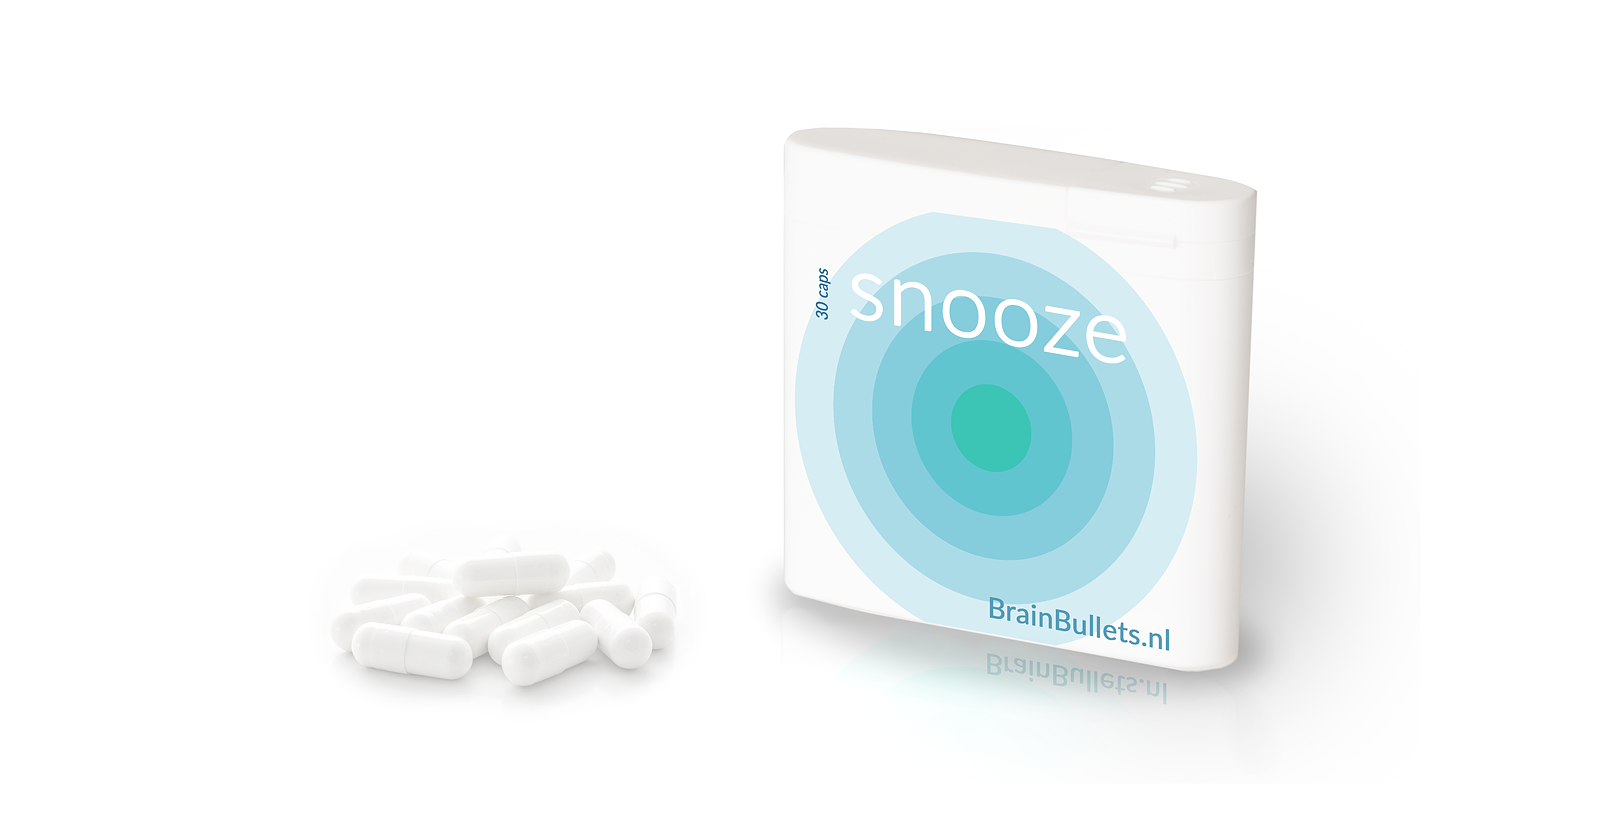 snooze sleeping melatonine pills package